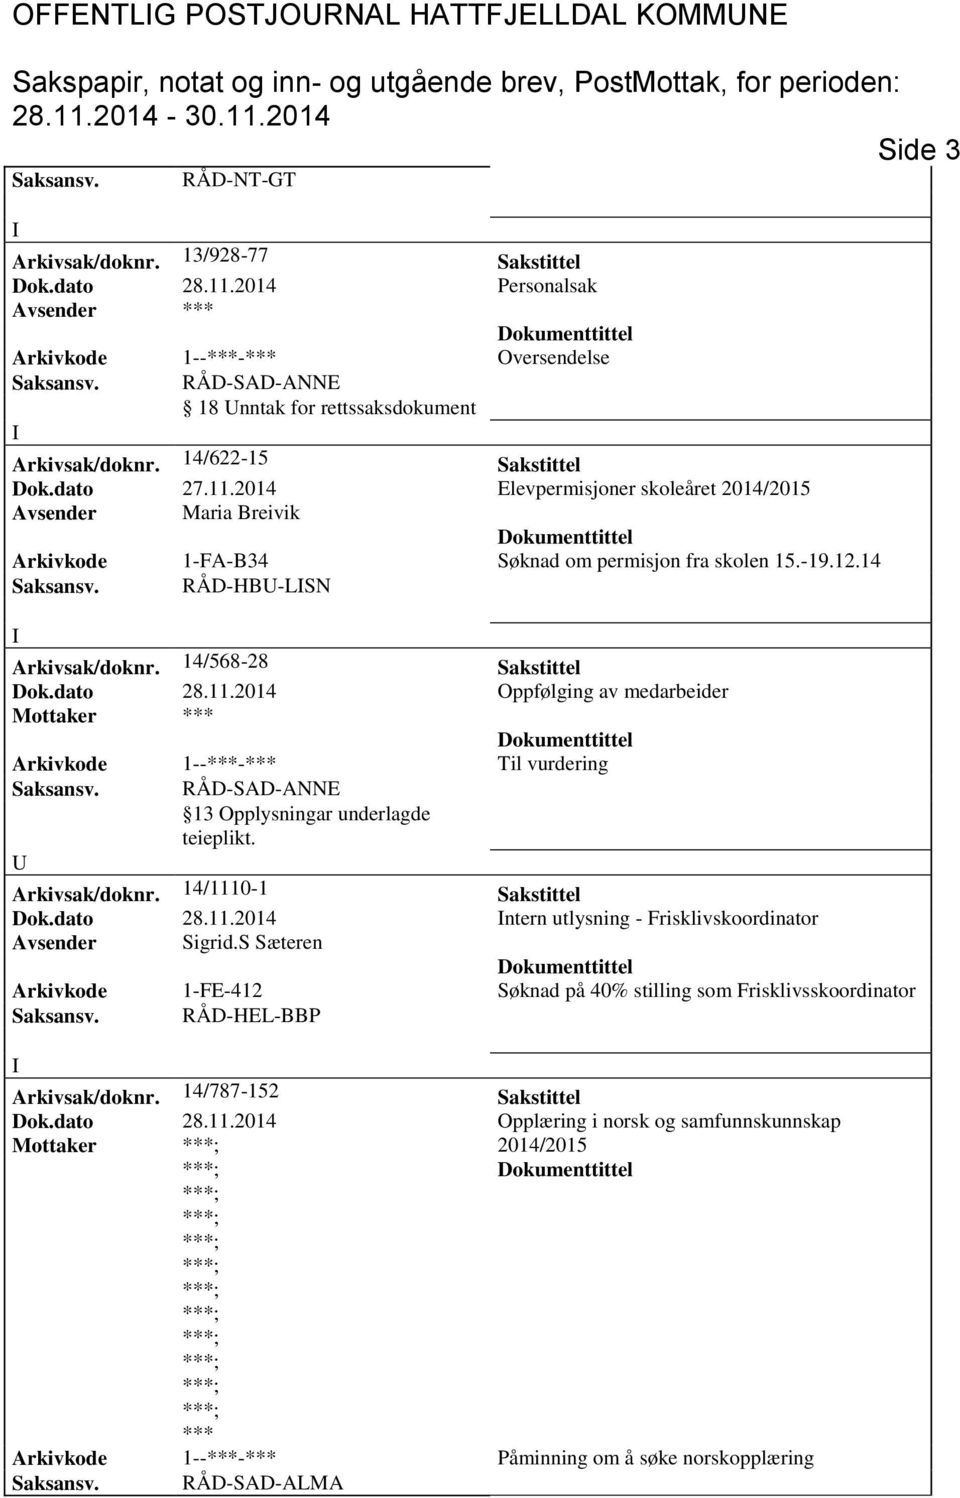 2014 Elevpermisjoner skoleåret Avsender Maria Breivik Arkivkode 1-FA-B34 øknad om permisjon fra skolen 15.-19.12.14 aksansv. RÅD-HB-LN Arkivsak/doknr. 14/568-28 akstittel Dok.dato 28.11.